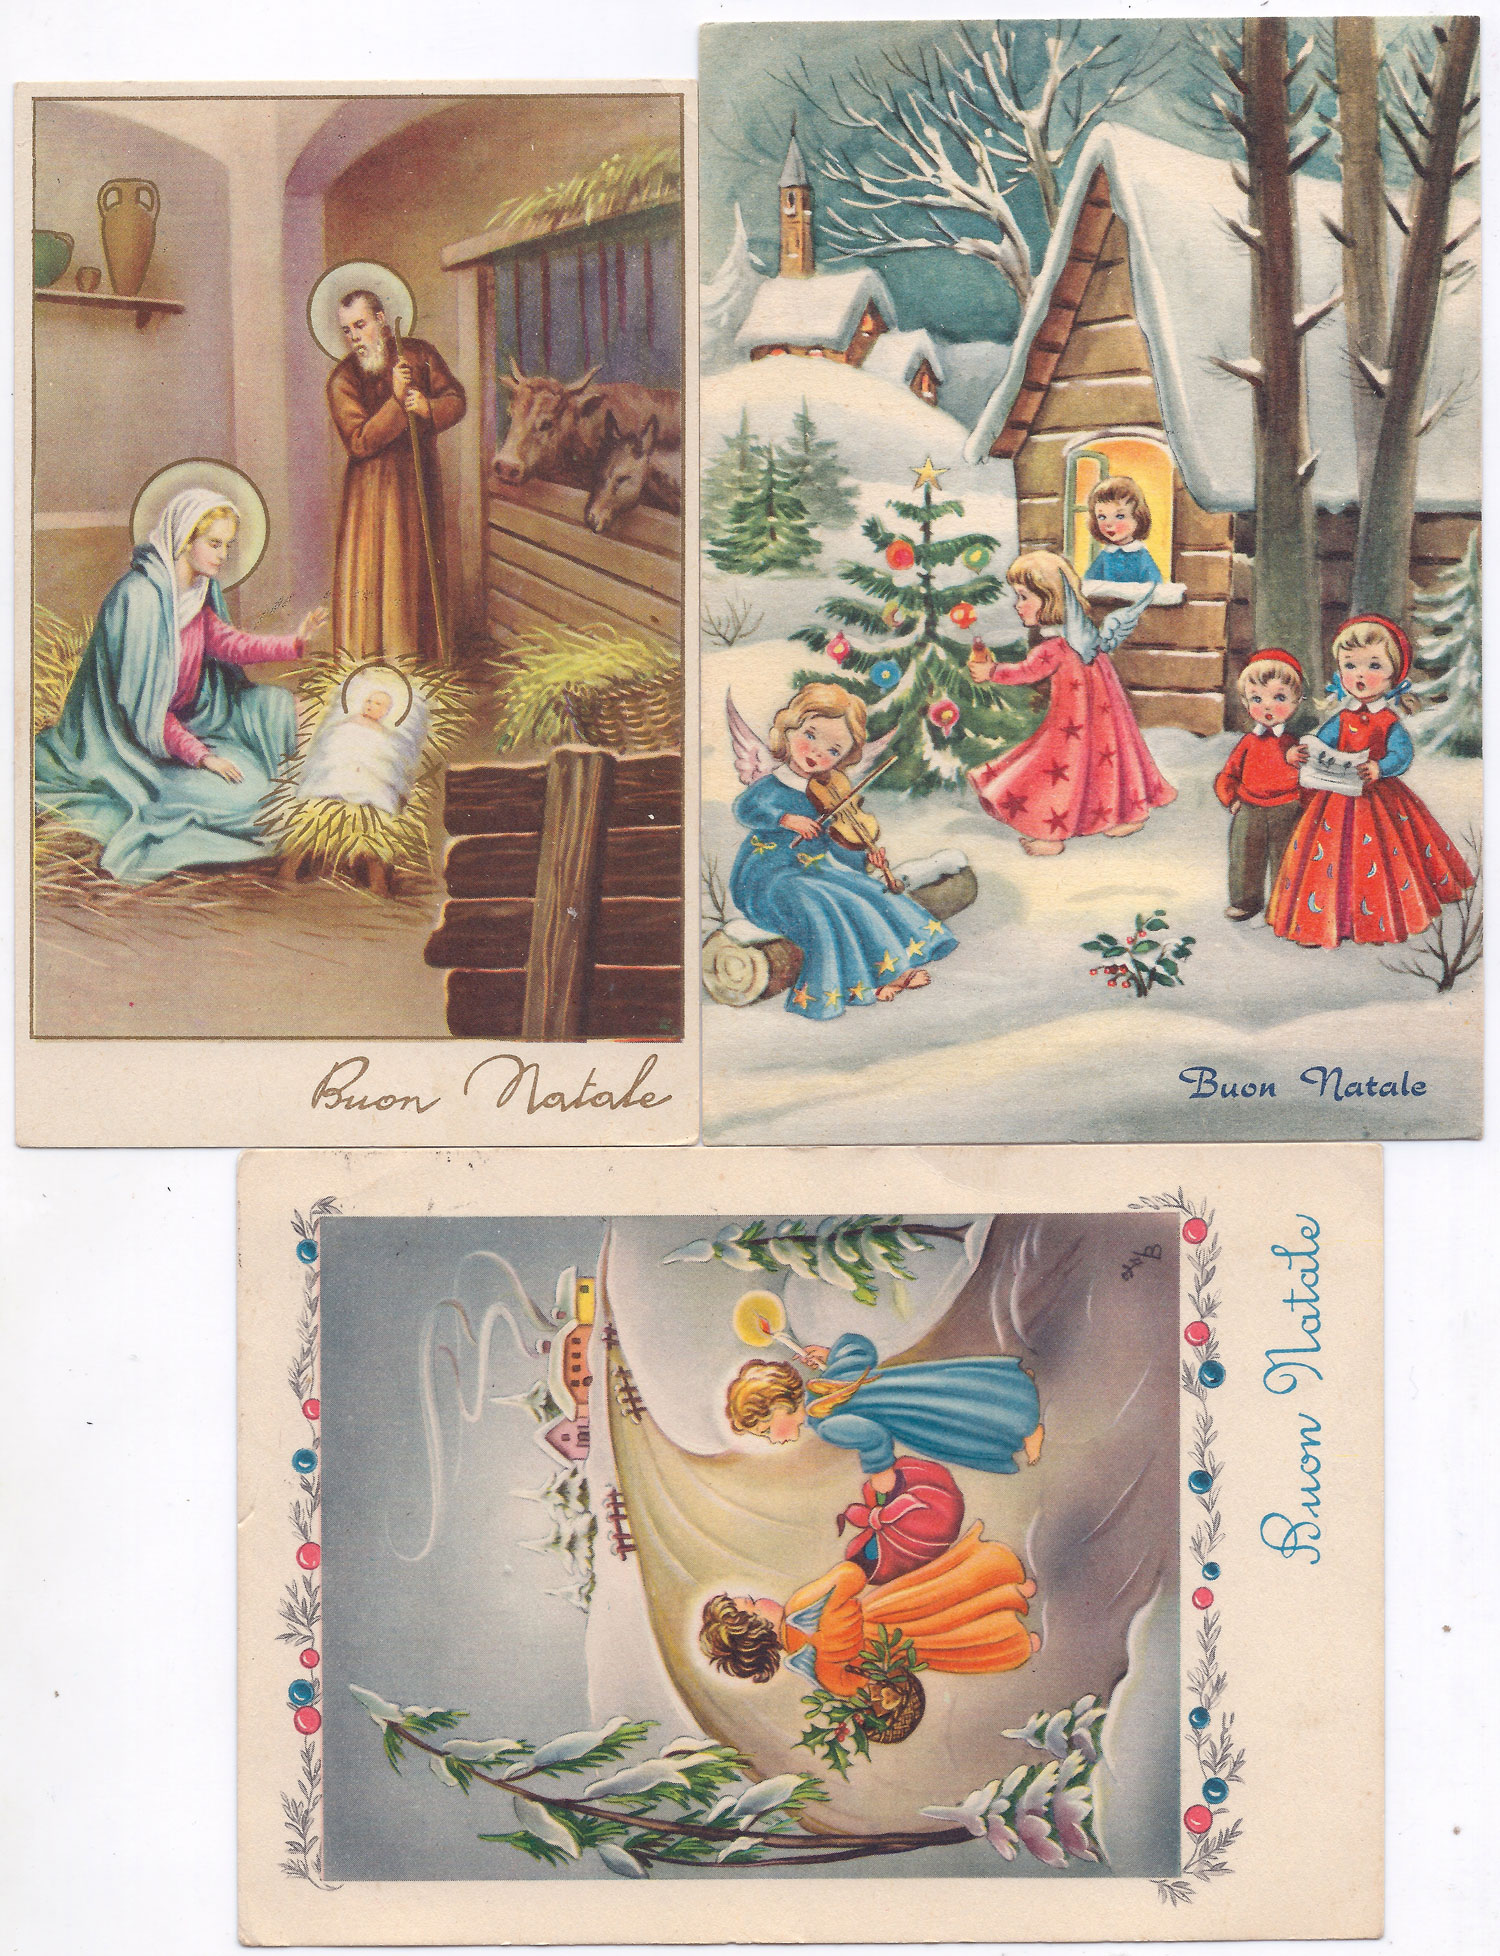 Immagini Natale Anni 50.Vecchie Cartoline E Letterine Natalizie Al Barnardon